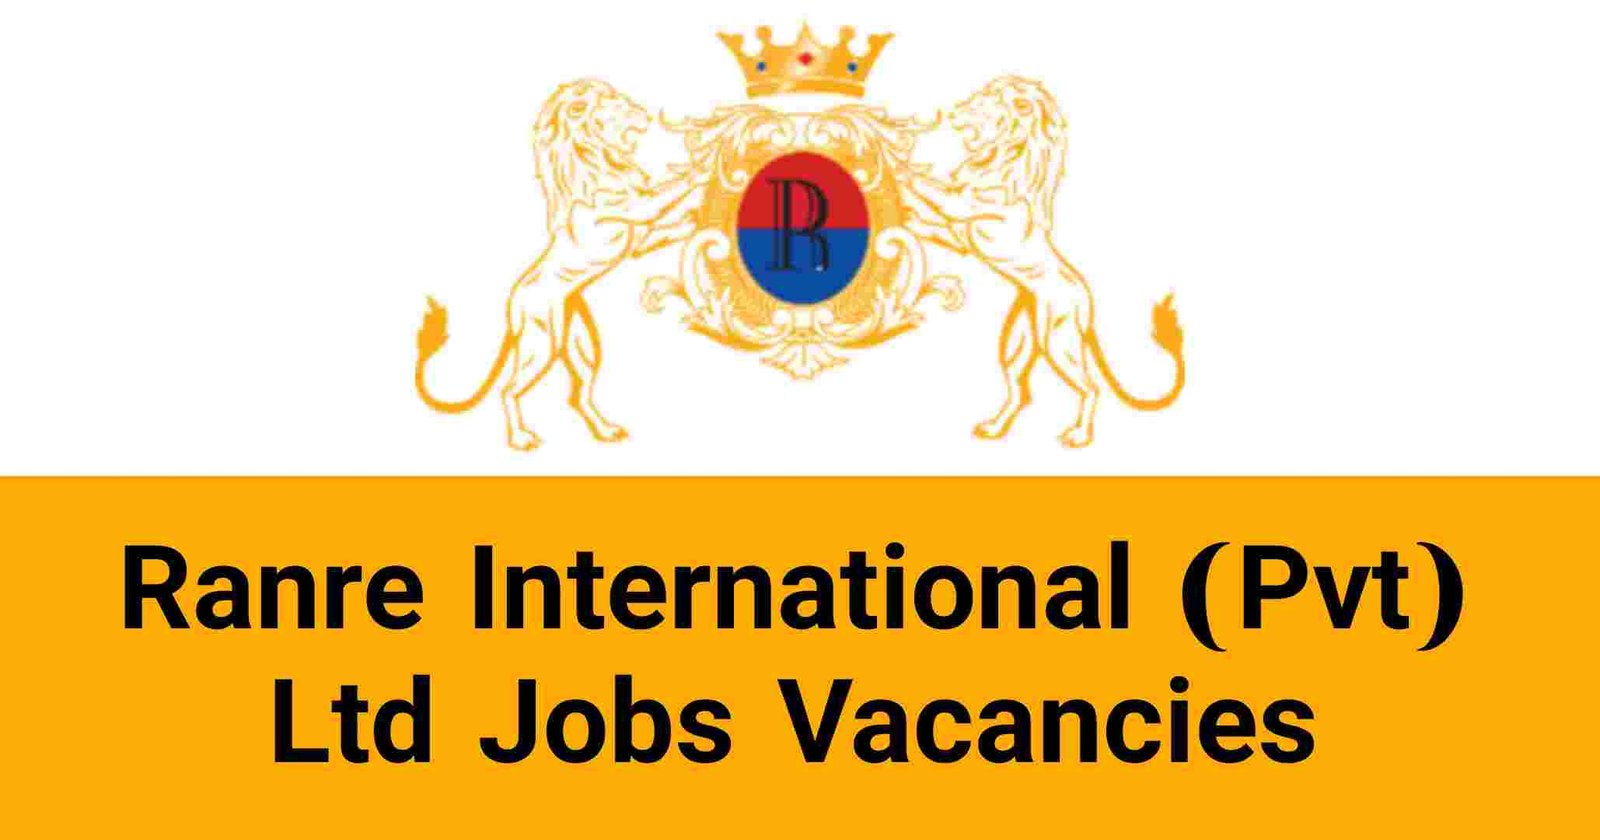 Ranre International (Pvt) Ltd Jobs Vacancies